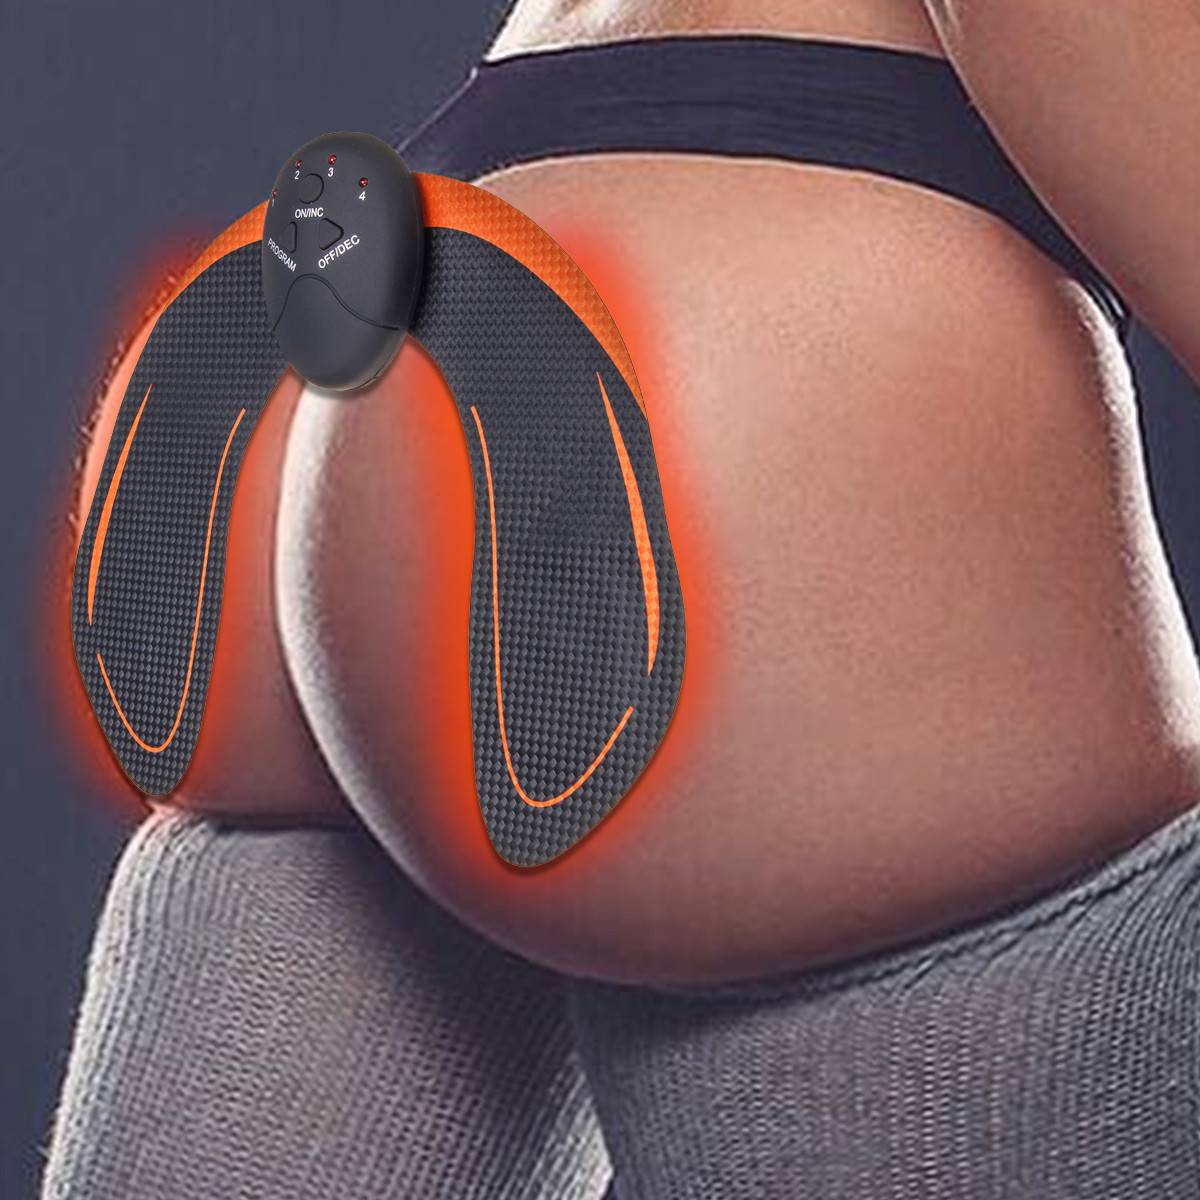 Ems hips trainer — современный миостимулятор для мышц ягодиц